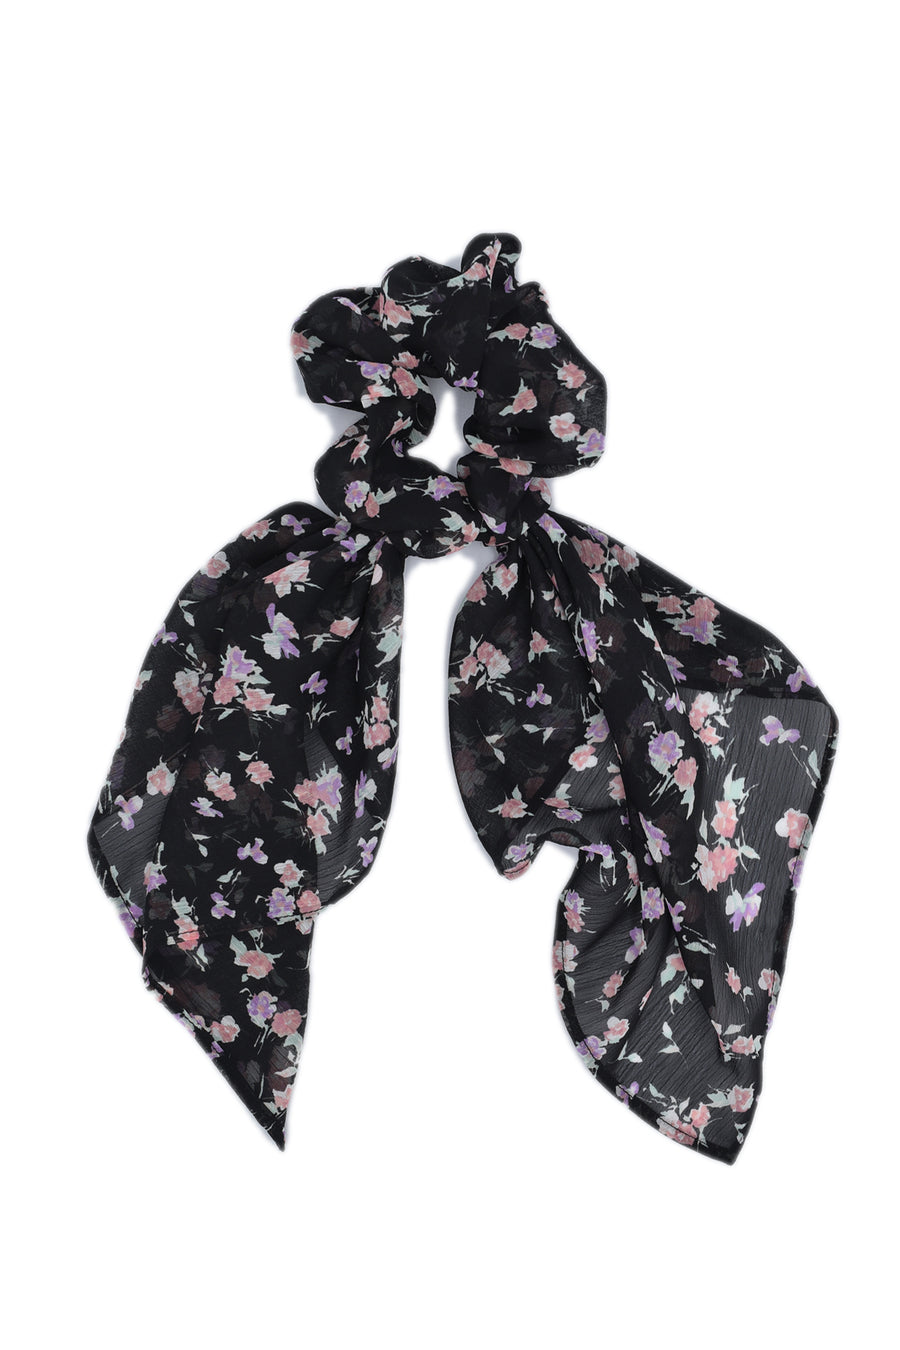 Black & pink scrunchie scarf !